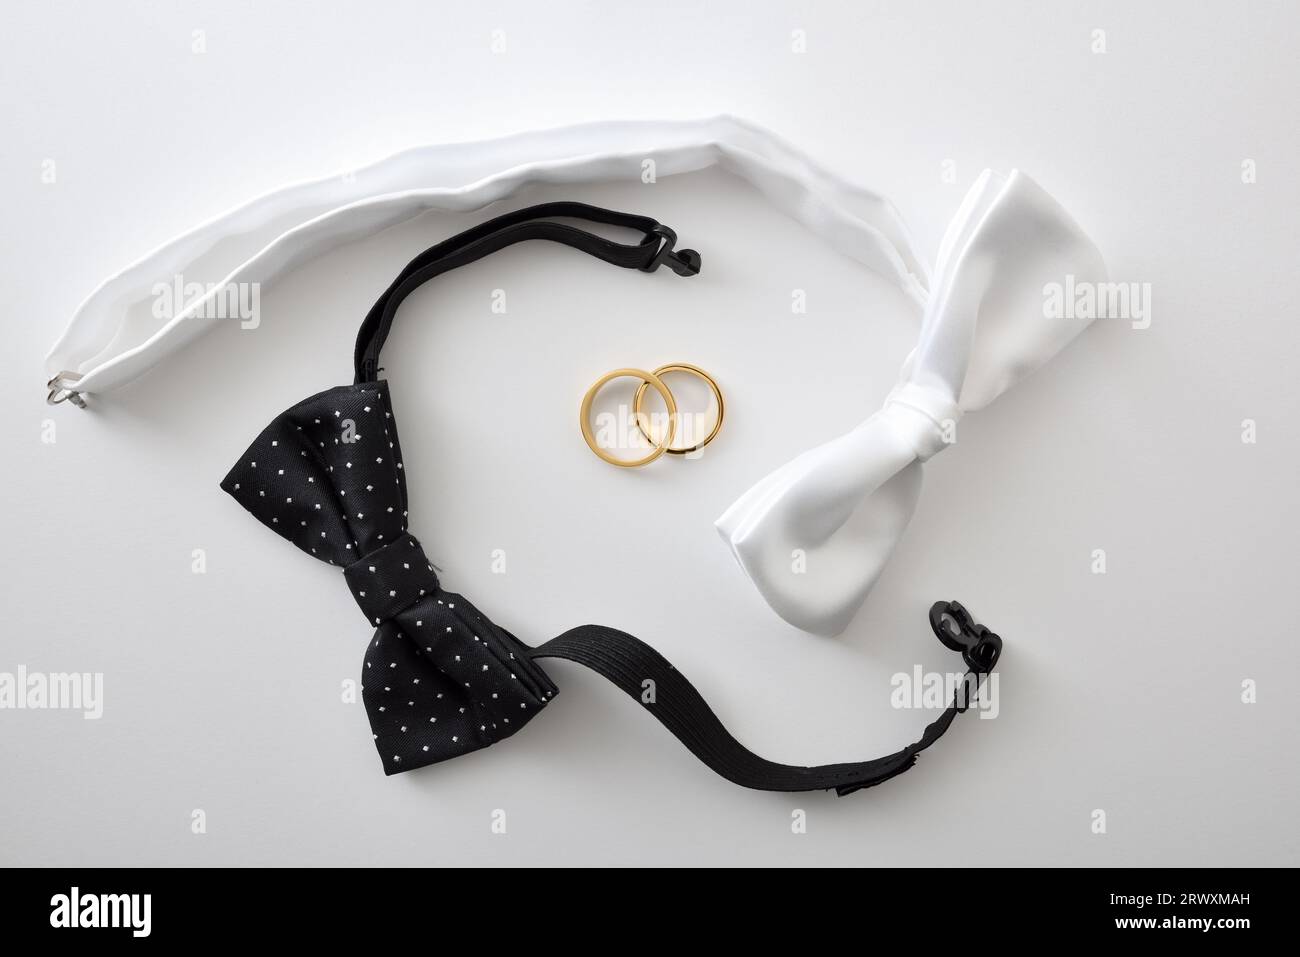 Fond de mariage gay conceptuel avec noeud papillon noir et blanc entourant les anneaux de mariage. Vue de dessus. Banque D'Images